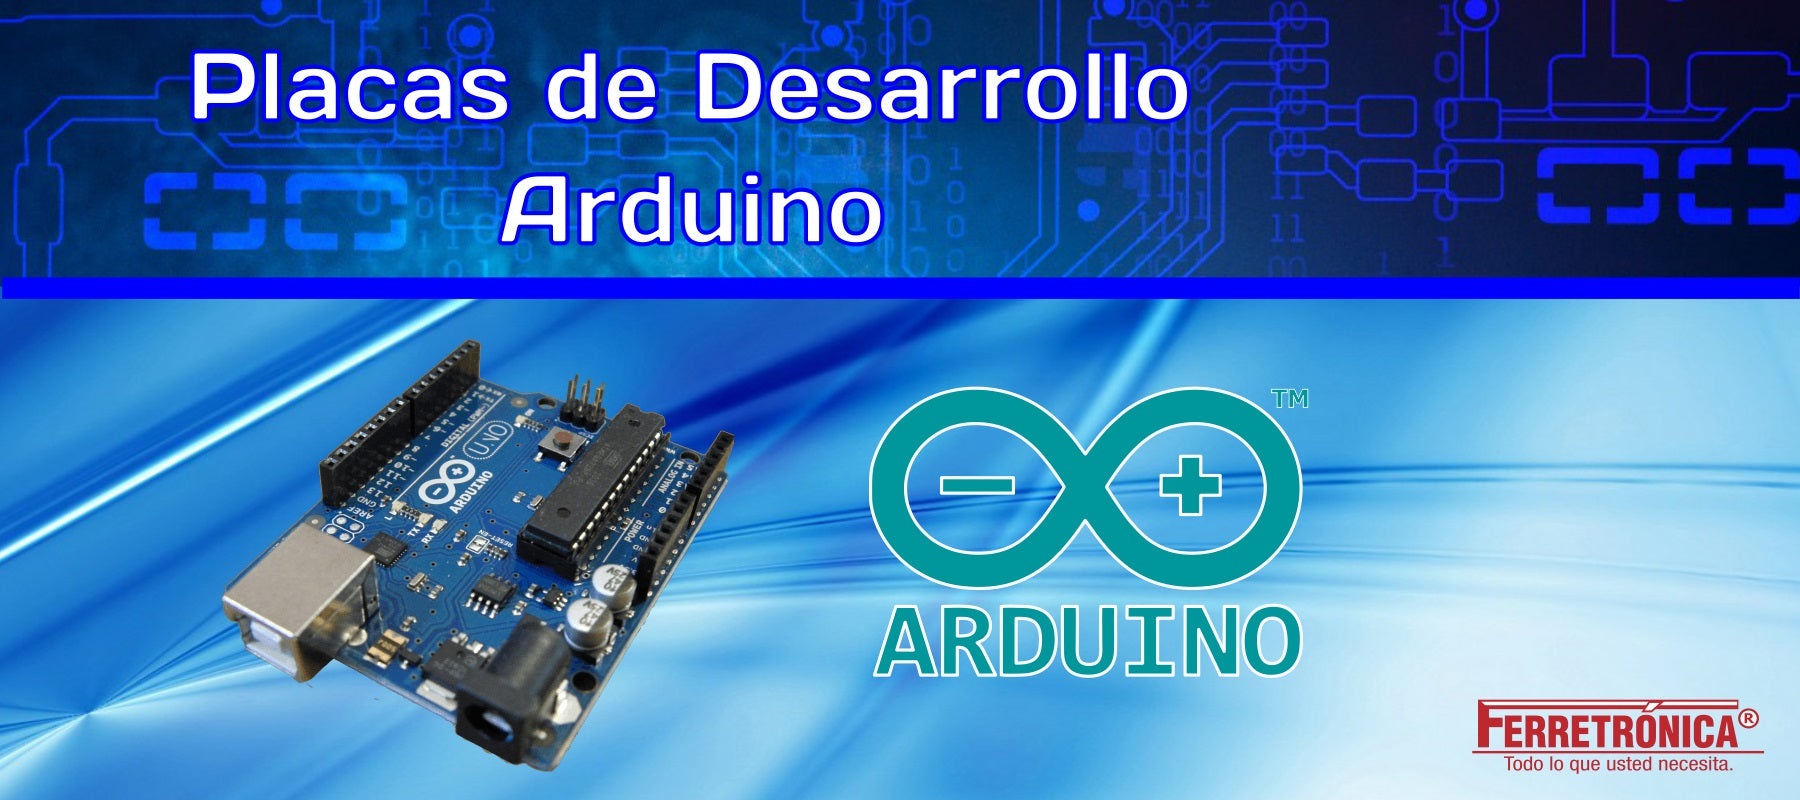 Placas de Desarrollo arduino para robótica y proyectos electrónicos, ferretrónica